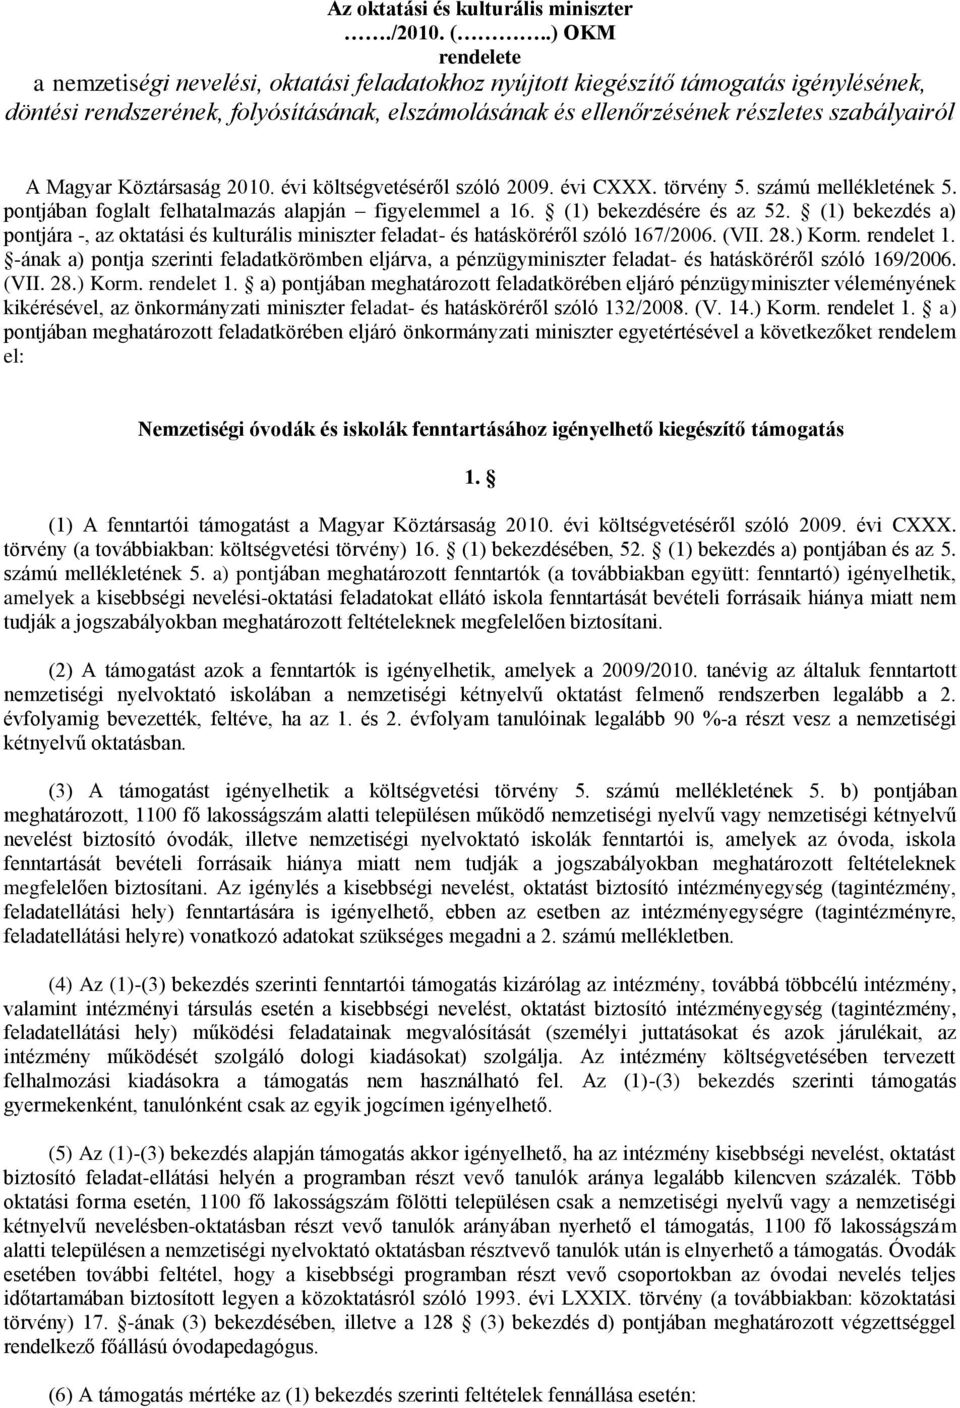 szabályairól A Magyar Köztársaság 2010. évi költségvetéséről szóló 2009. évi CXXX. törvény 5. számú mellékletének 5. pontjában foglalt felhatalmazás alapján figyelemmel a 16. (1) bekezdésére és az 52.